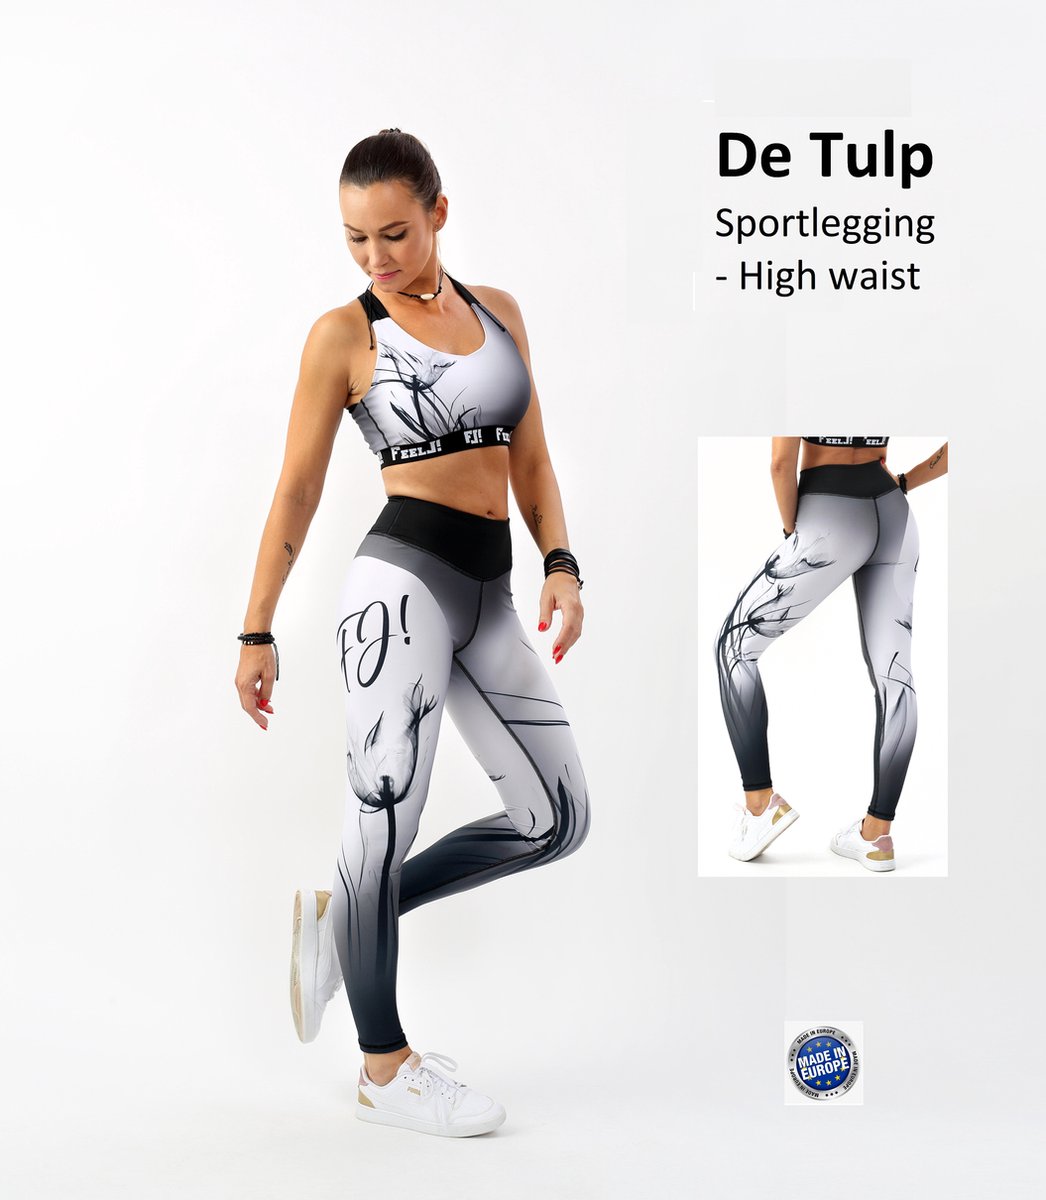 Feelj Sportlegging Tulp - High Waist met mooie Tulp Print - M